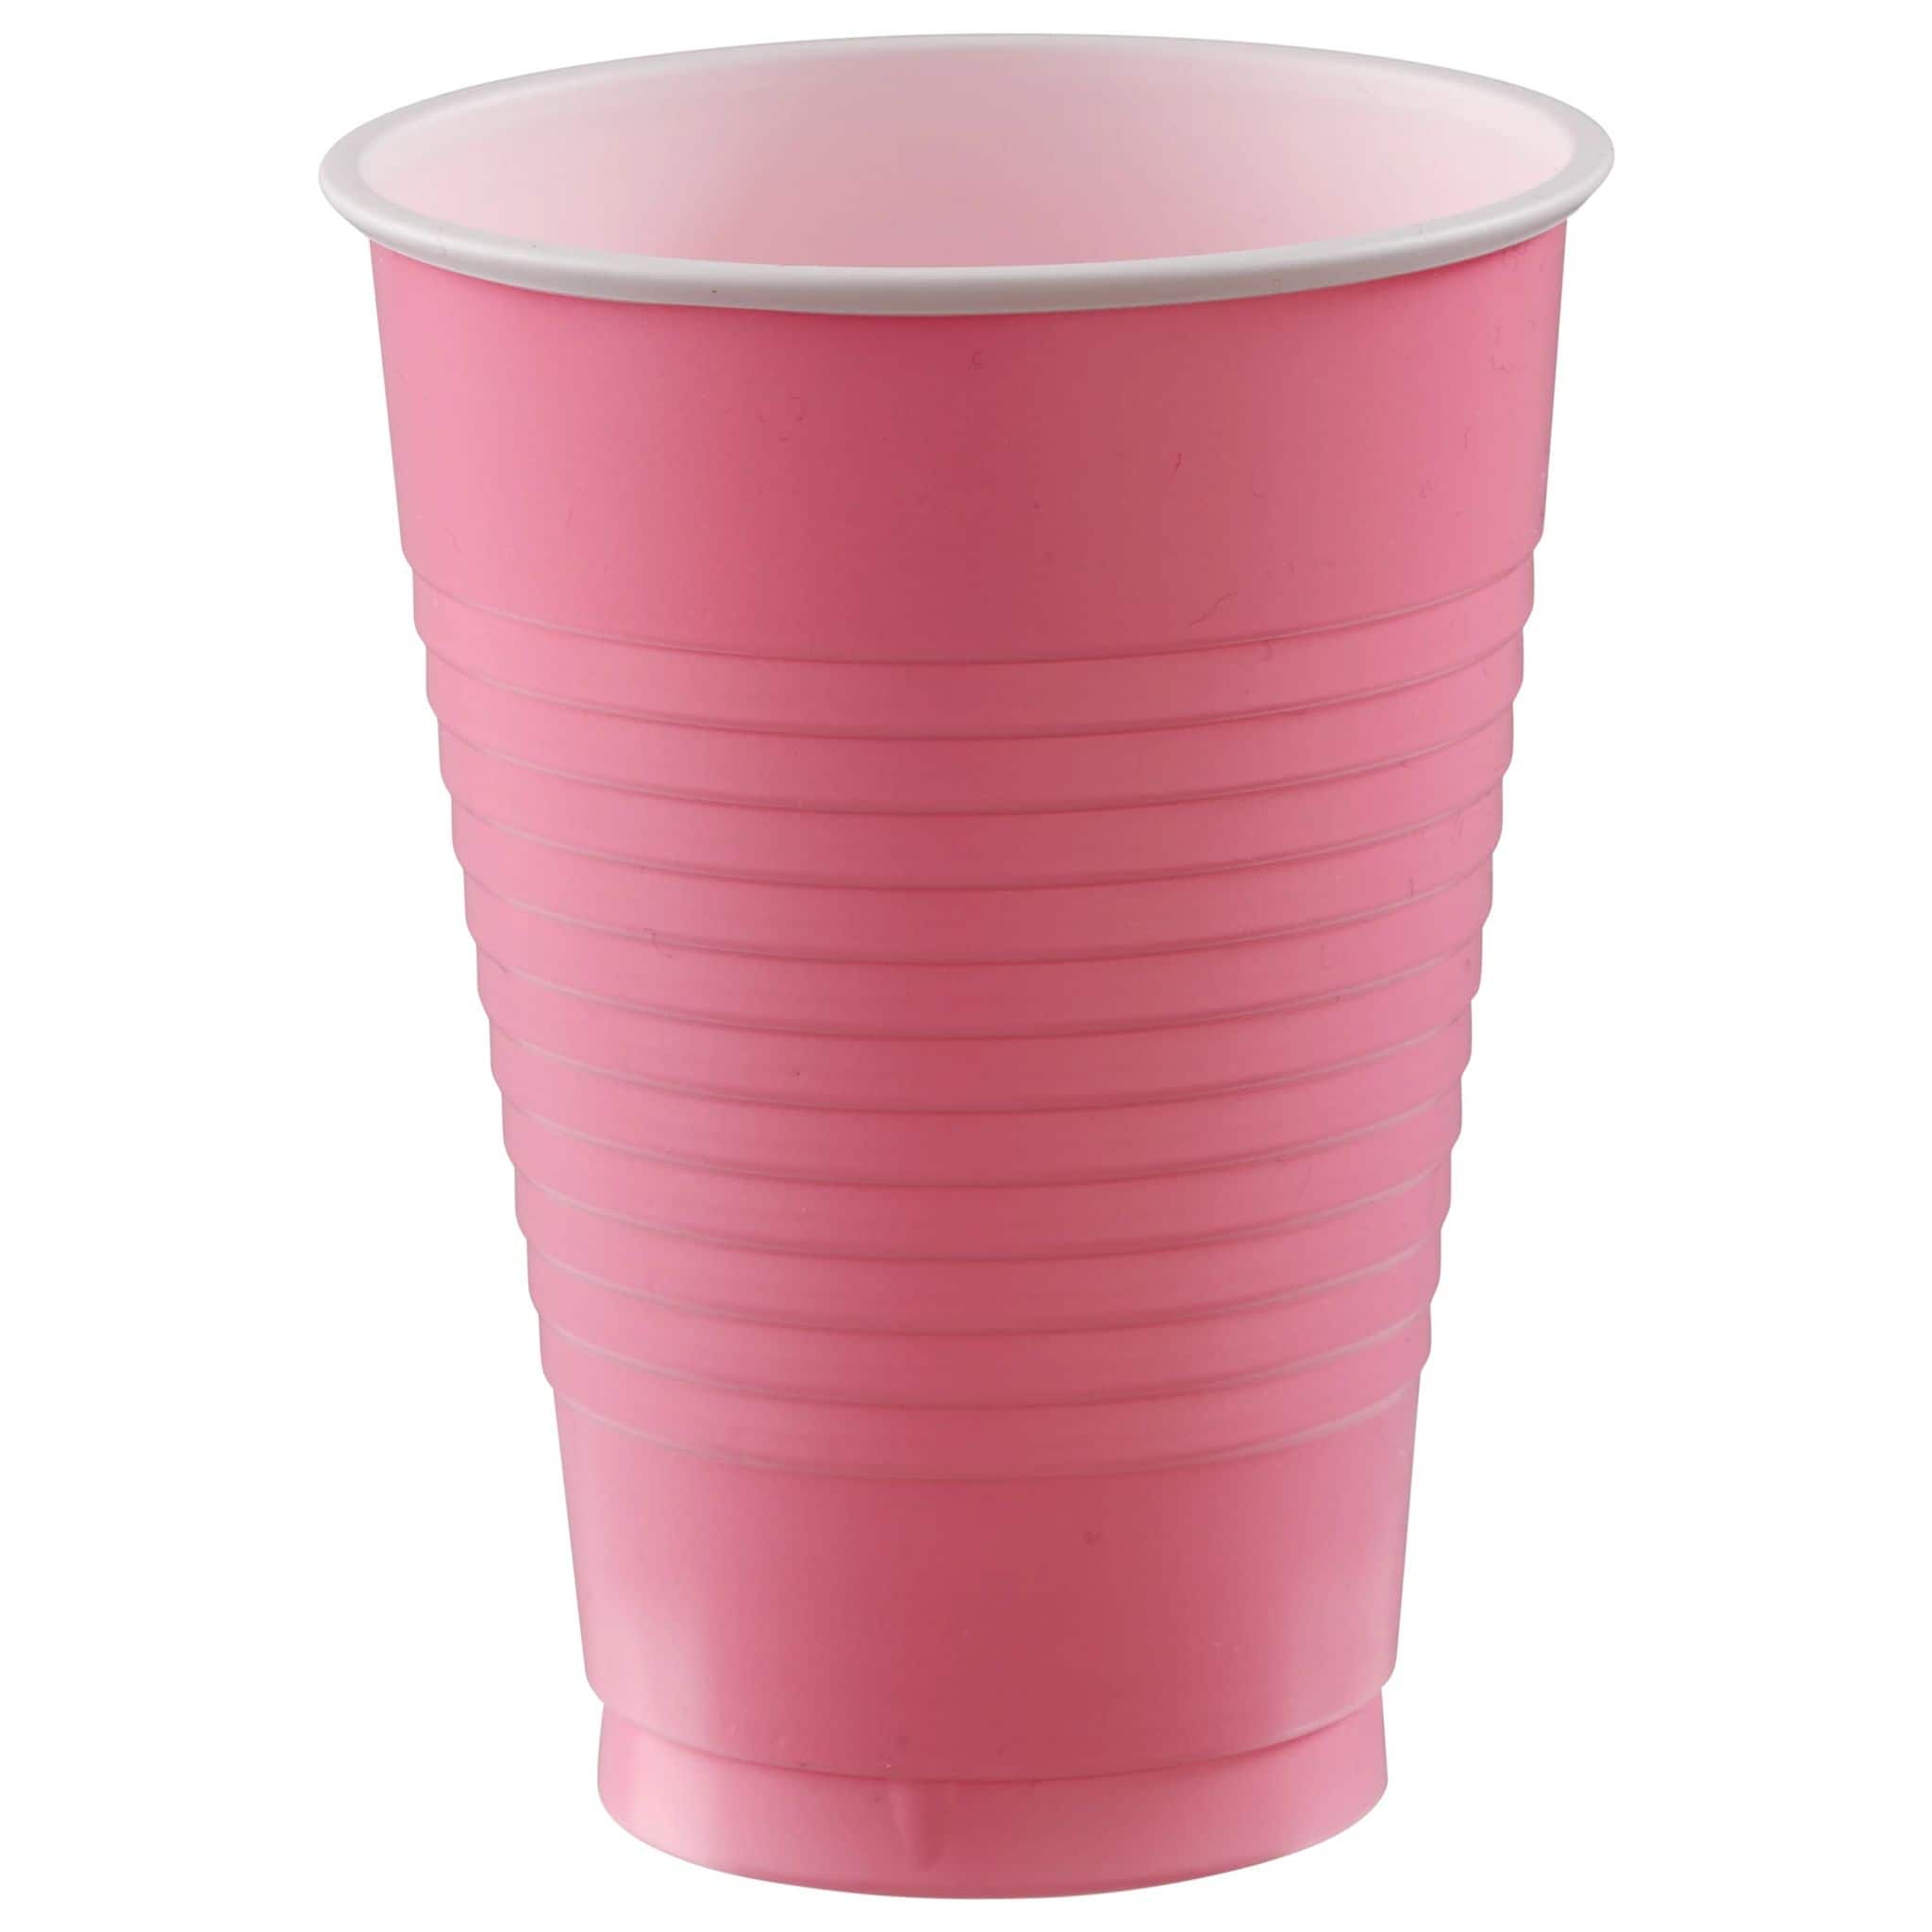 12oz. Plastic Cups, 150ct.